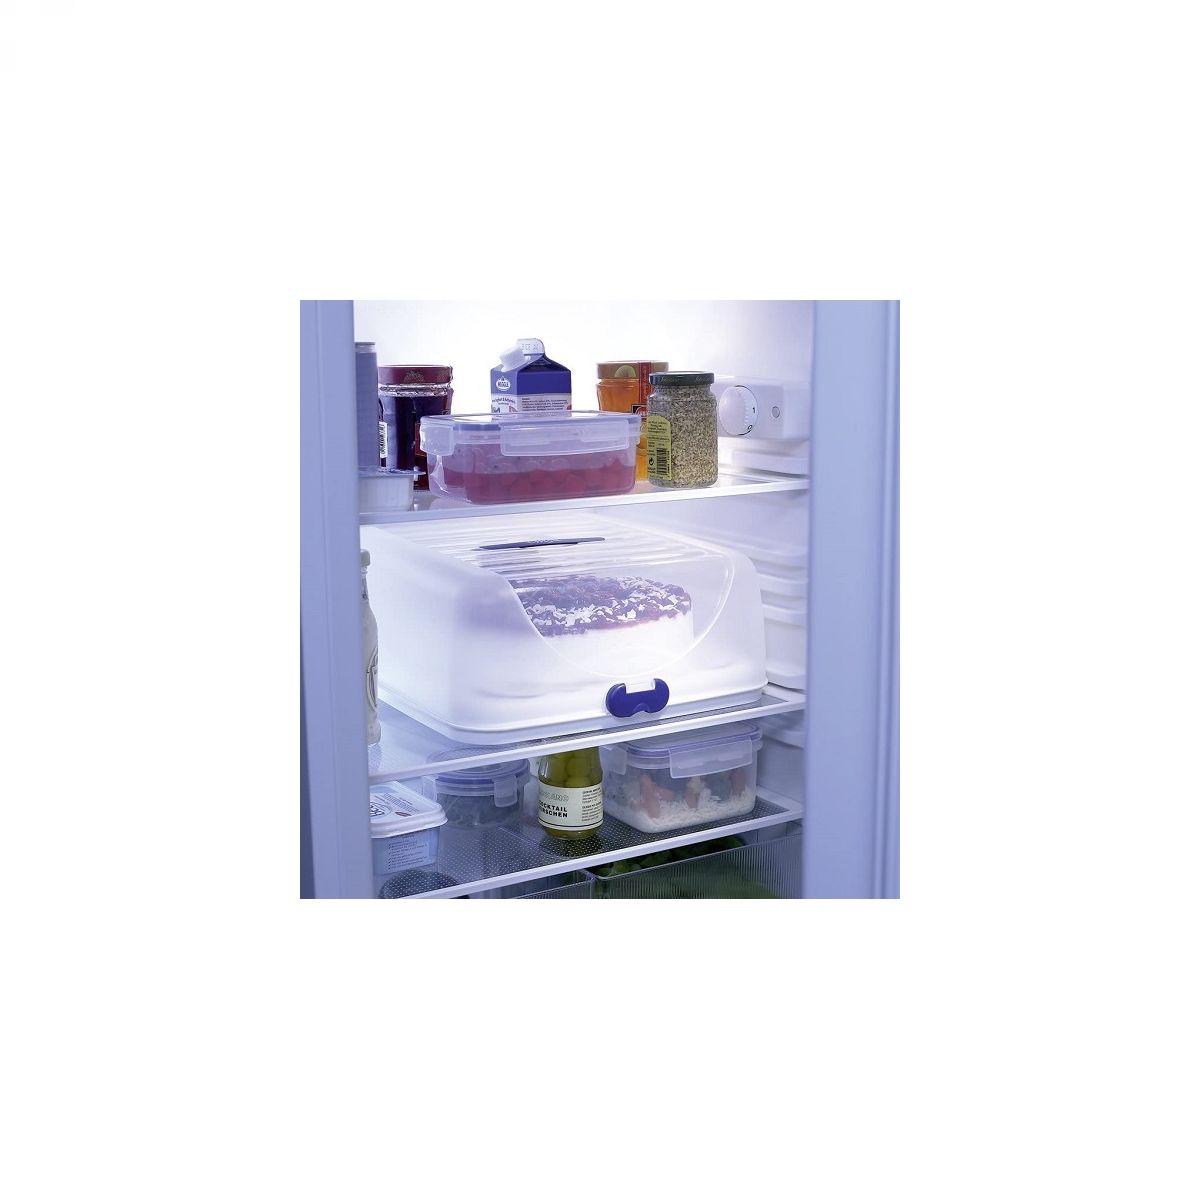 Posoda za serviranje in prenos hrane - Party butler basic, 36 cm bela - EMSA SUPERLINE